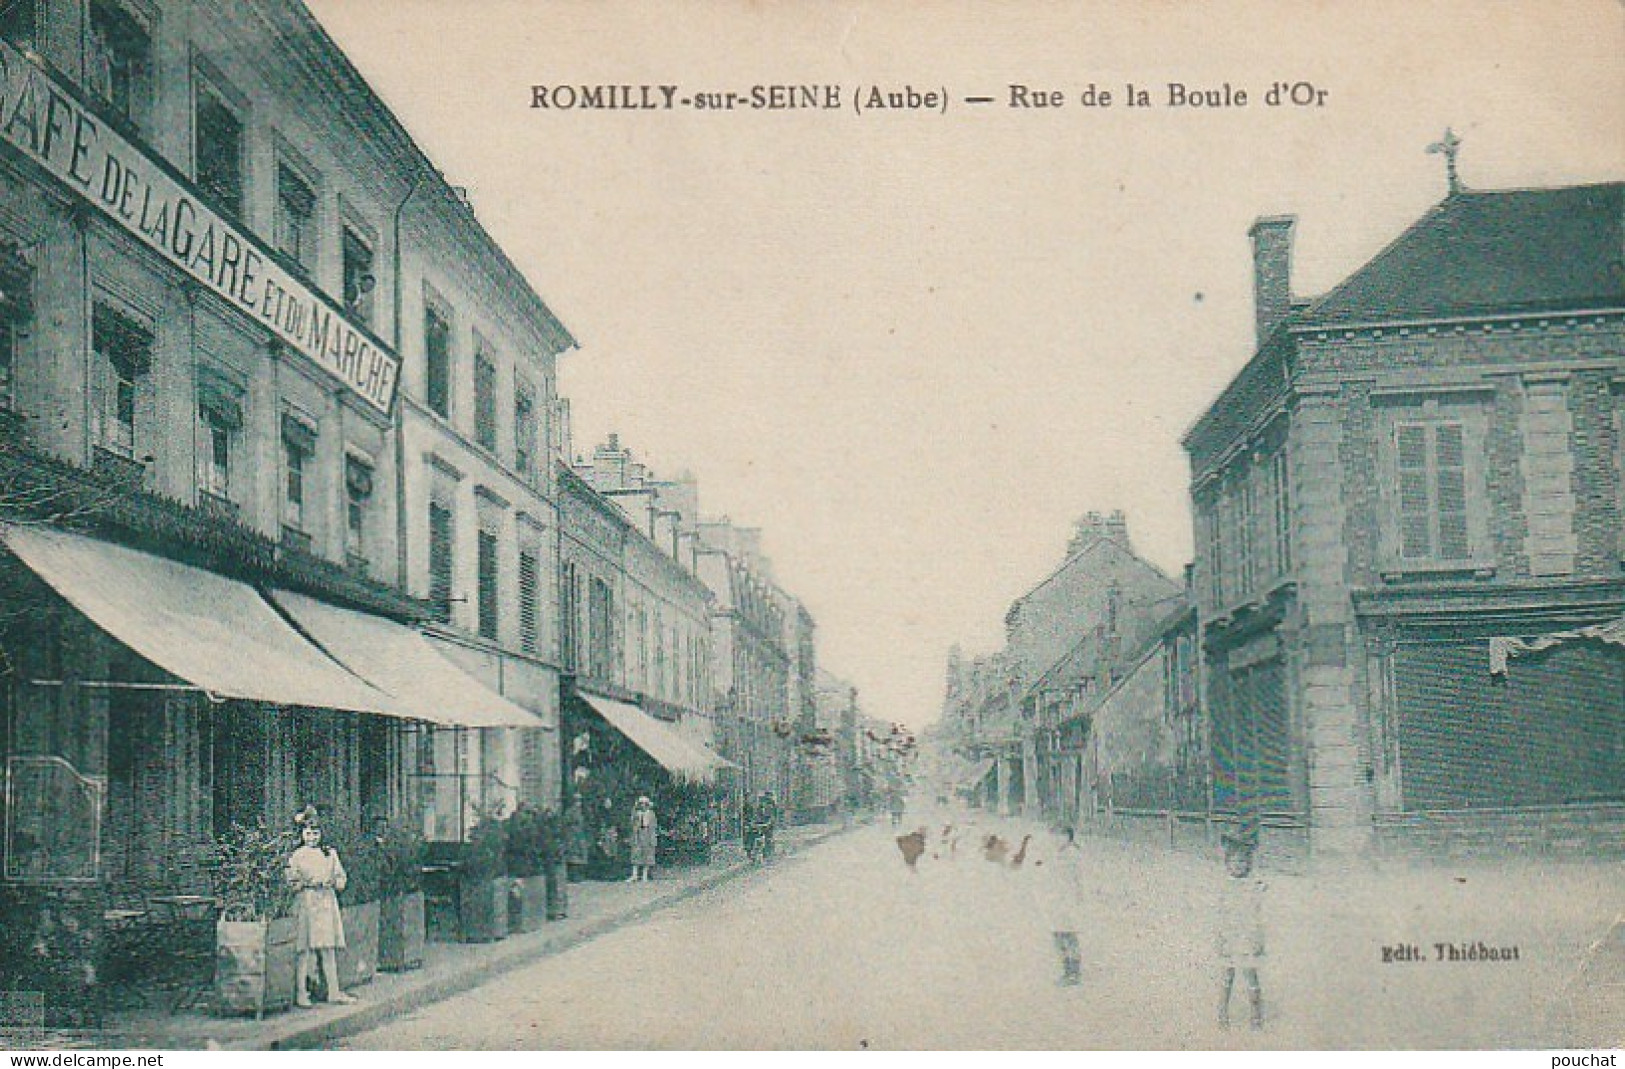 ALnw 13-(10) ROMILLY SUR SEINE - RUE DE LA BOULE D' OR - CAFE DE LA GARE ET DU MARCHE - ANIMATION  - EDIT. THIEBAUT - Romilly-sur-Seine